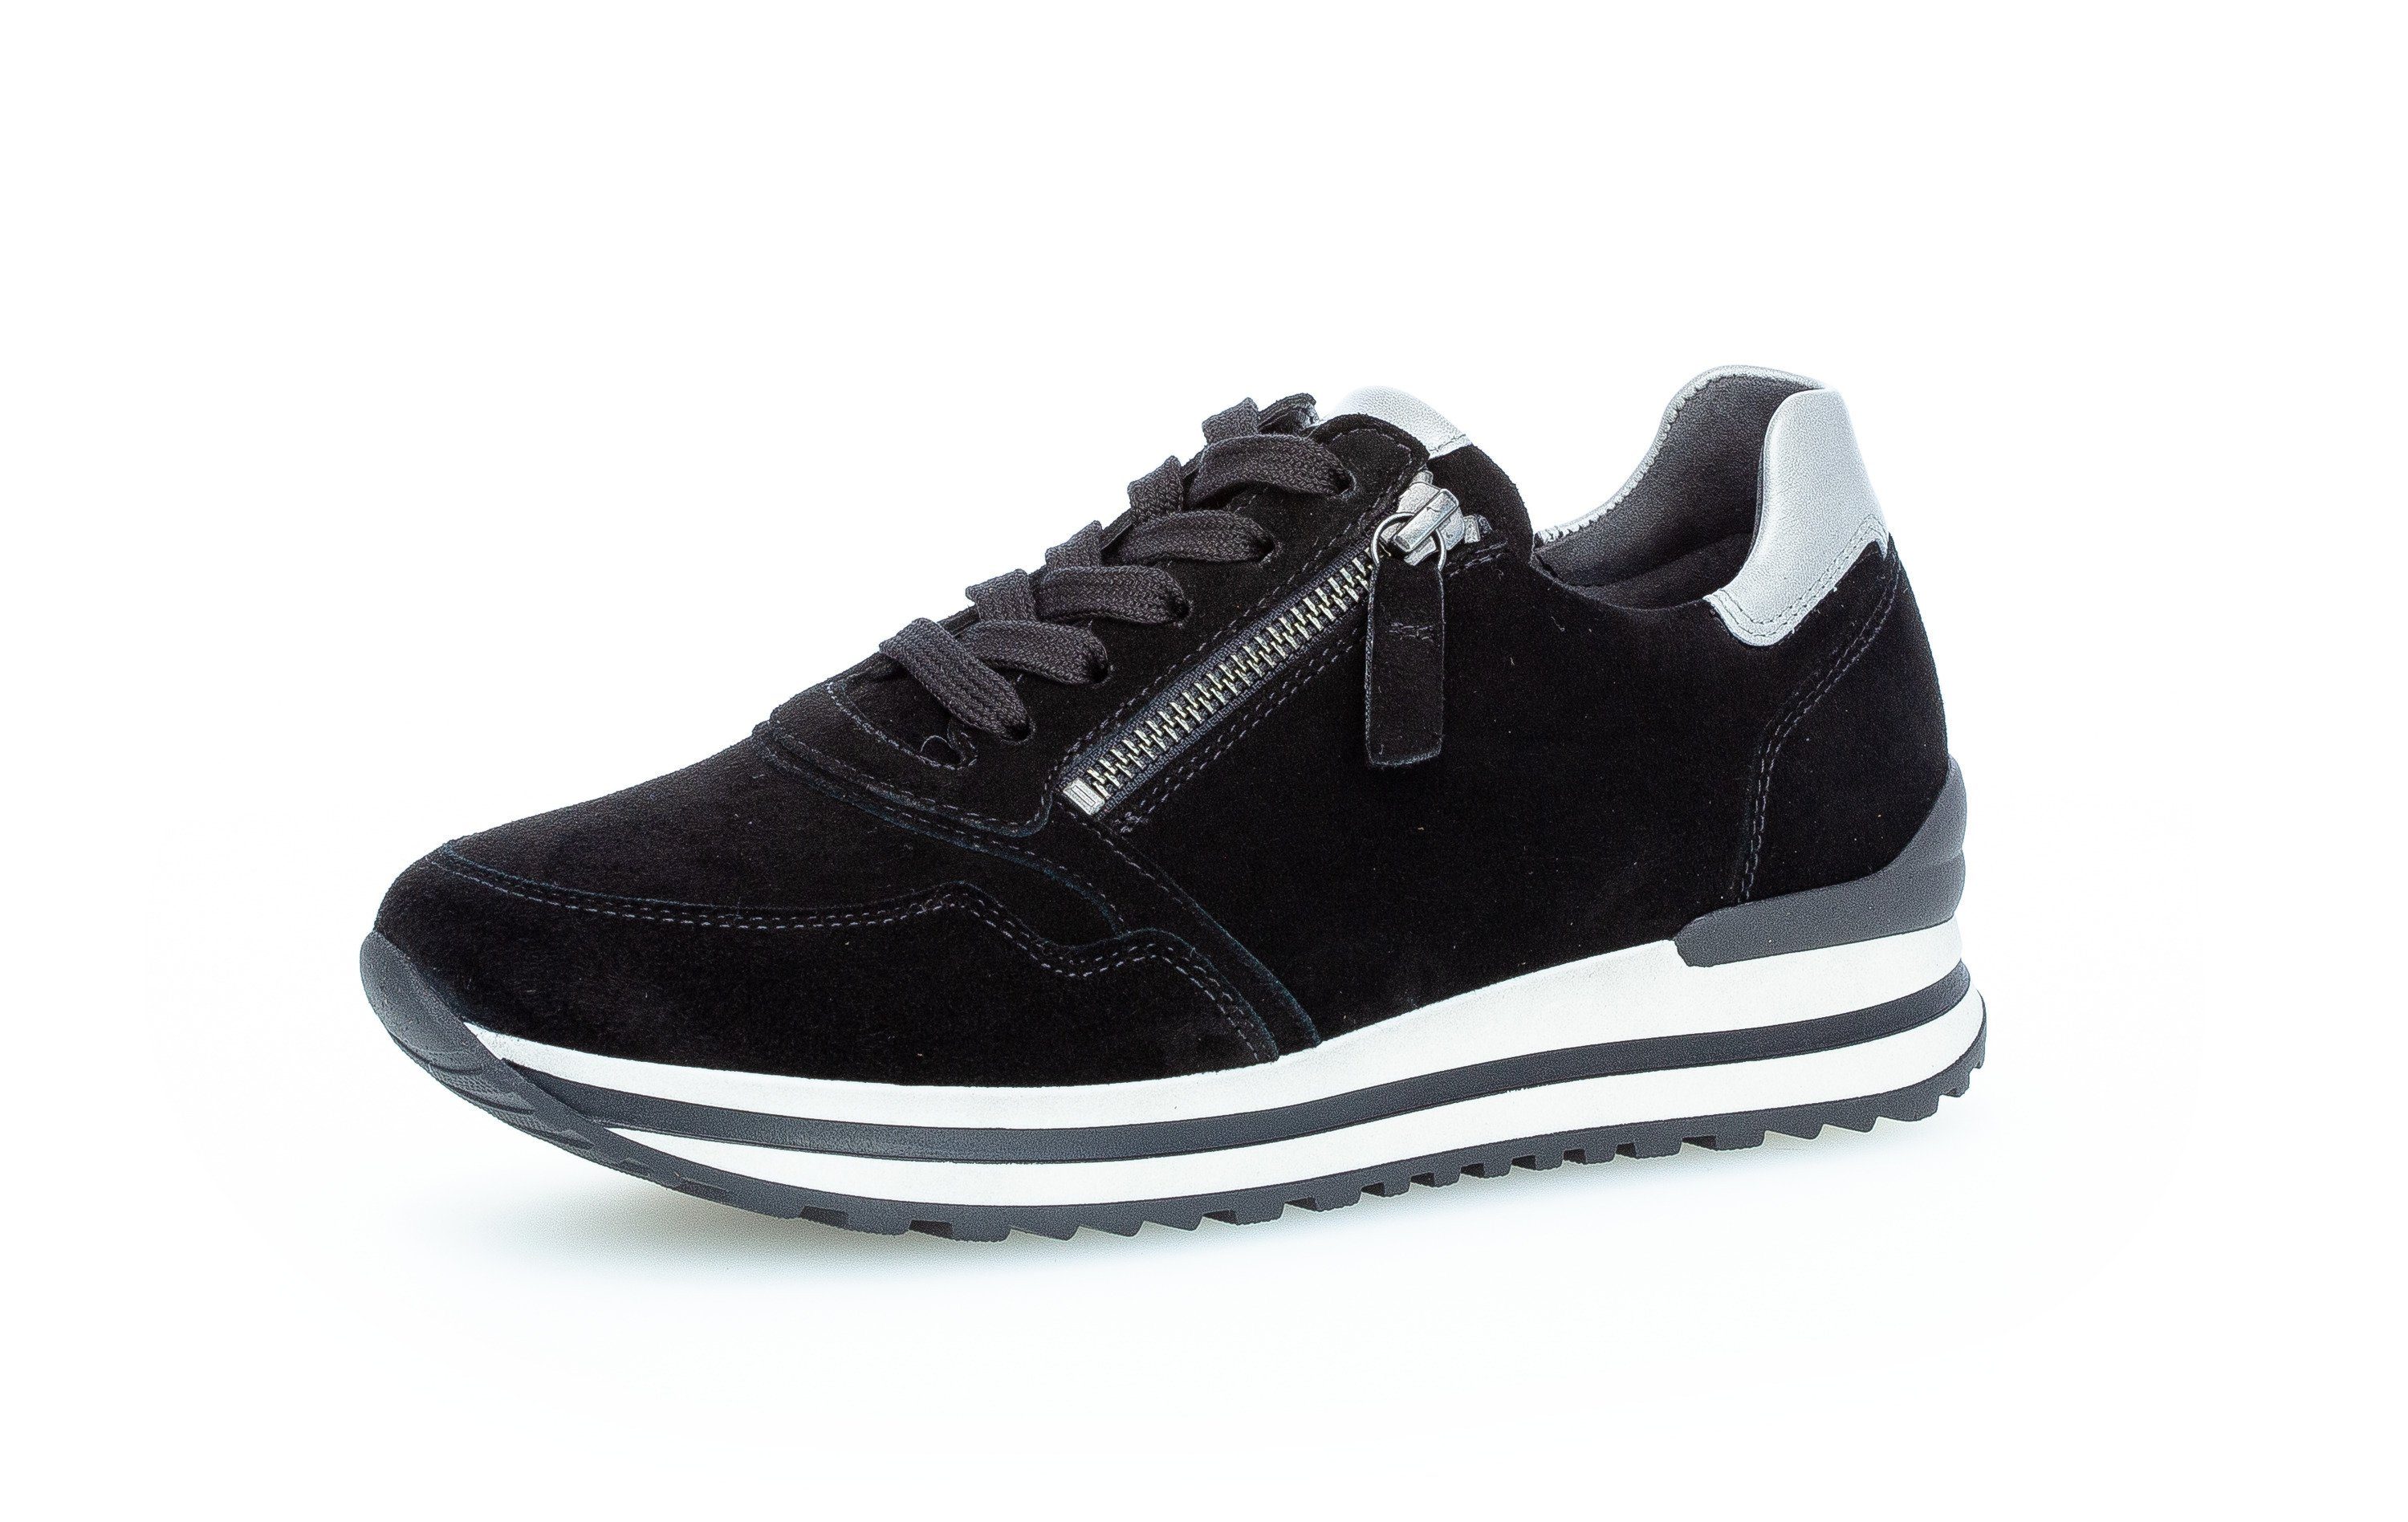 schwarz-bunt-kombiniert-schwarz-bunt-kombiniert Comfort Gabor Sneaker